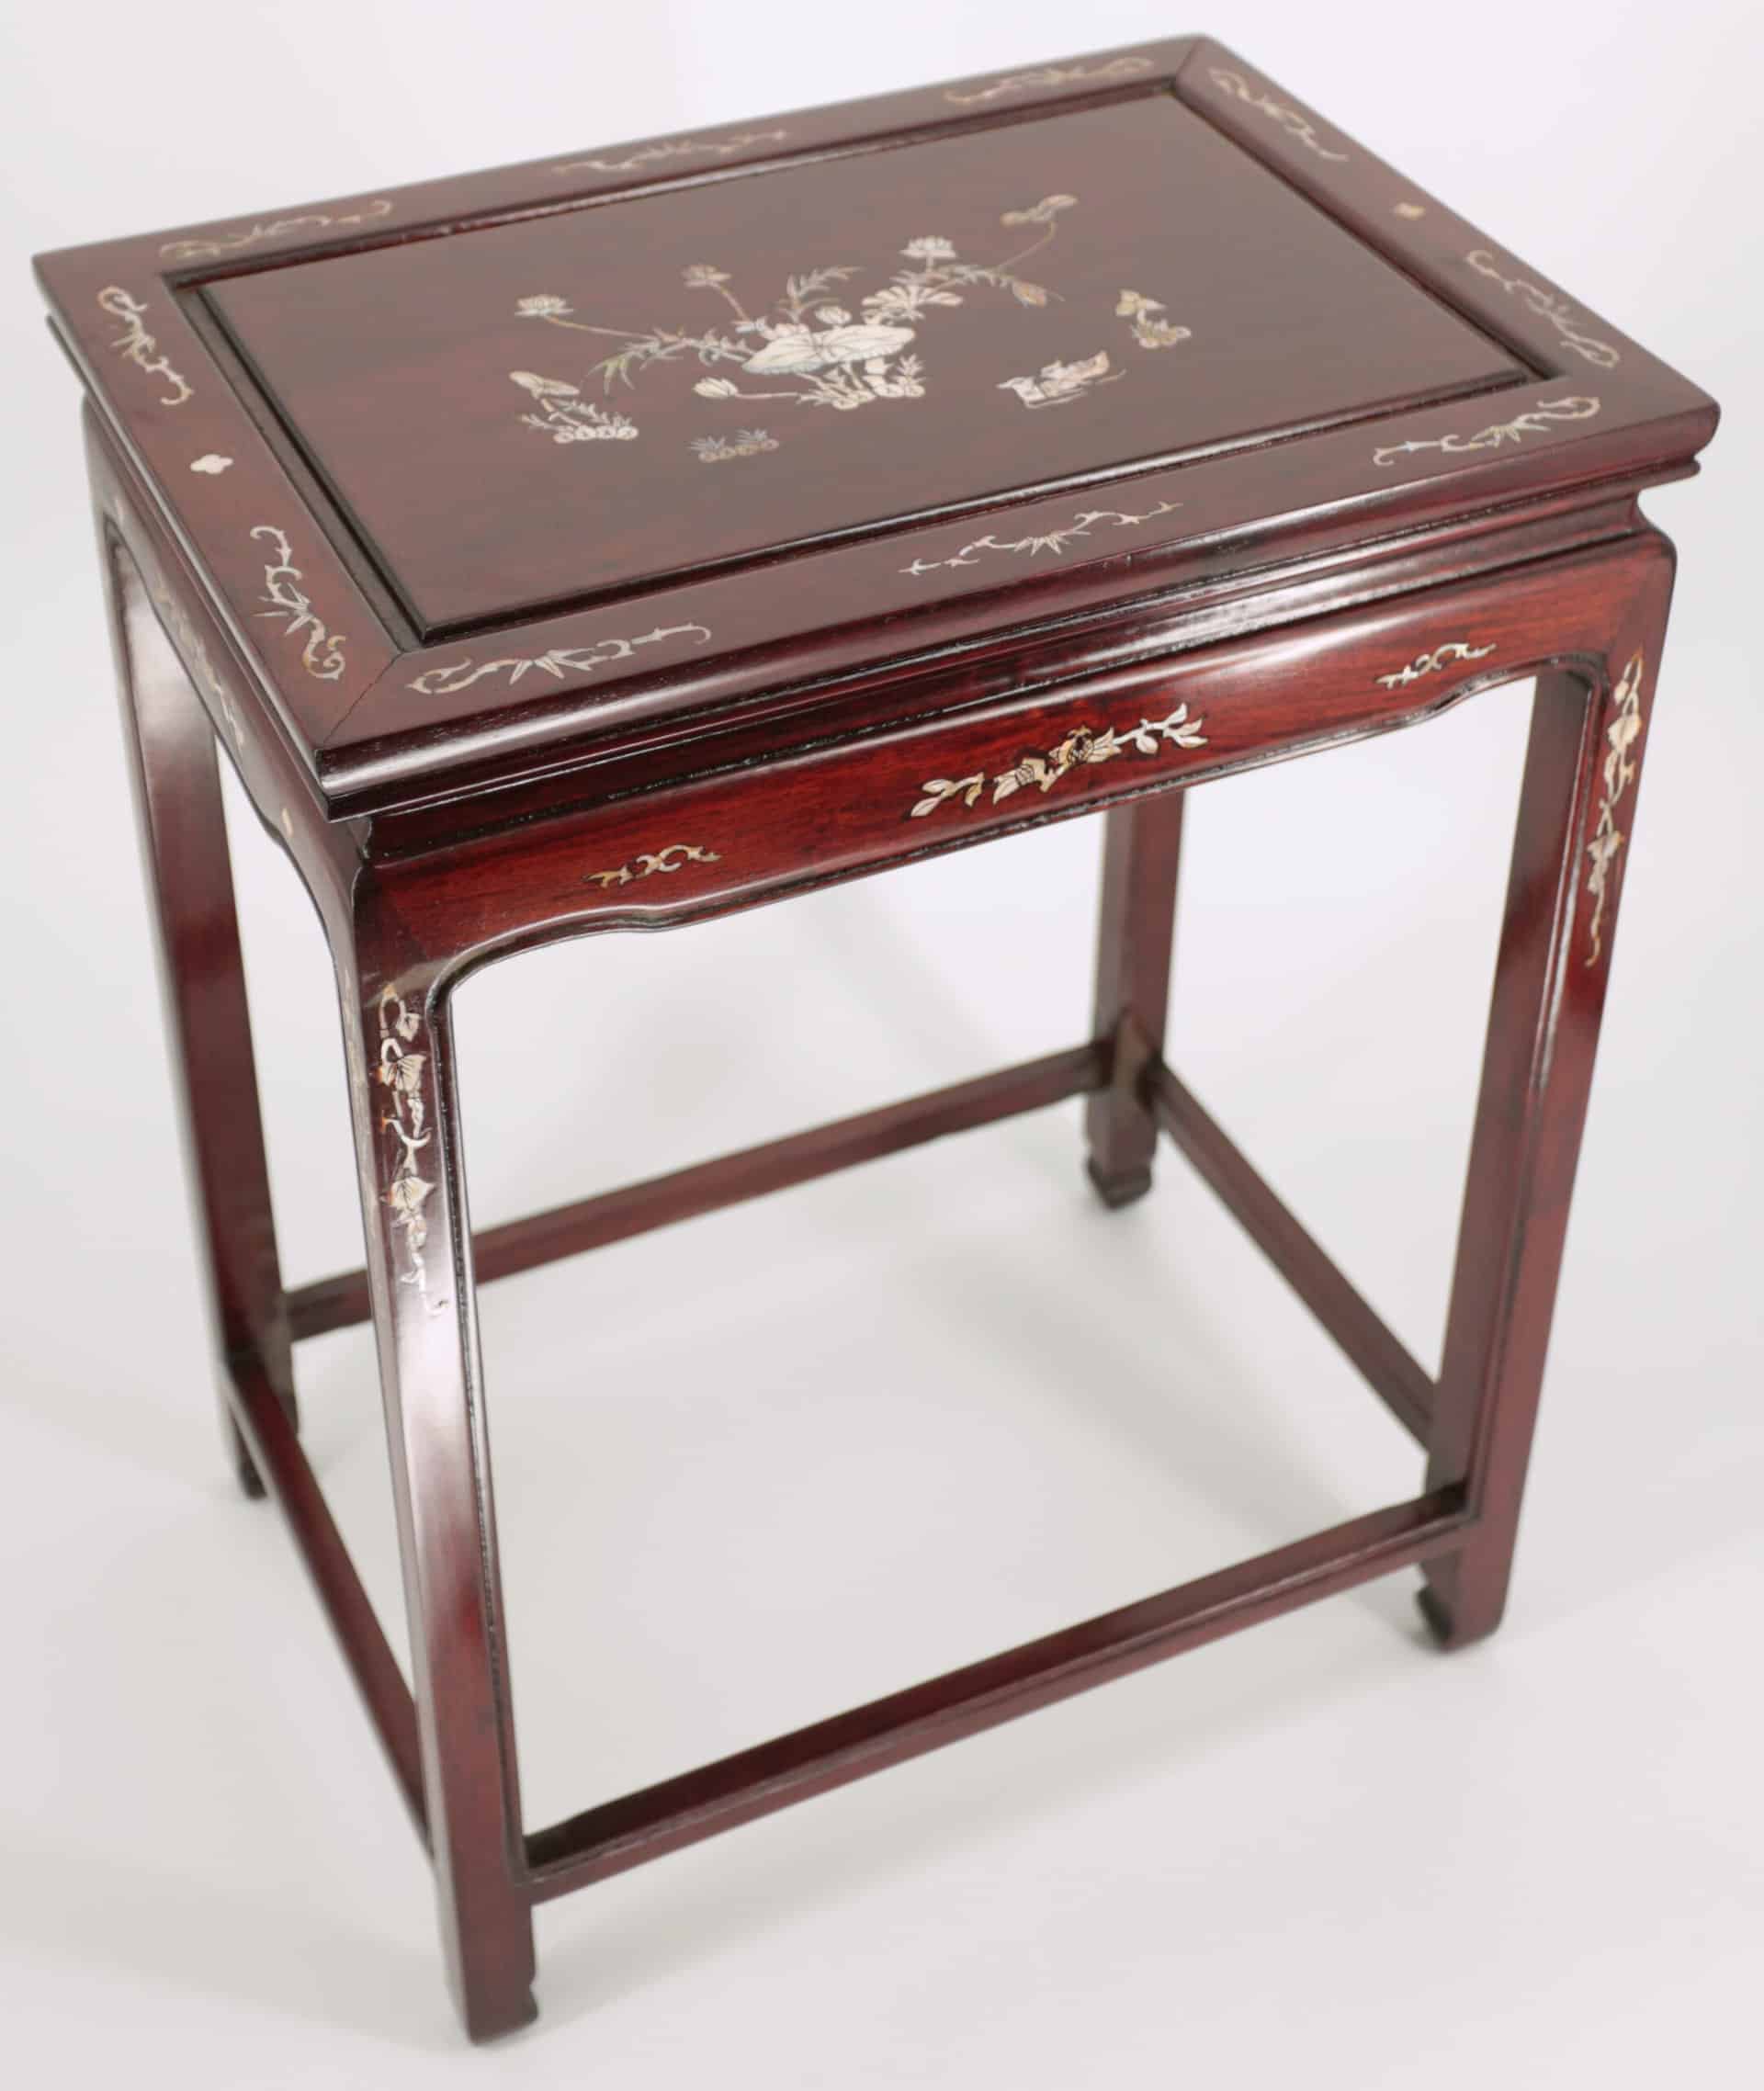 Čínský odkládací stolek vykládaný perletí